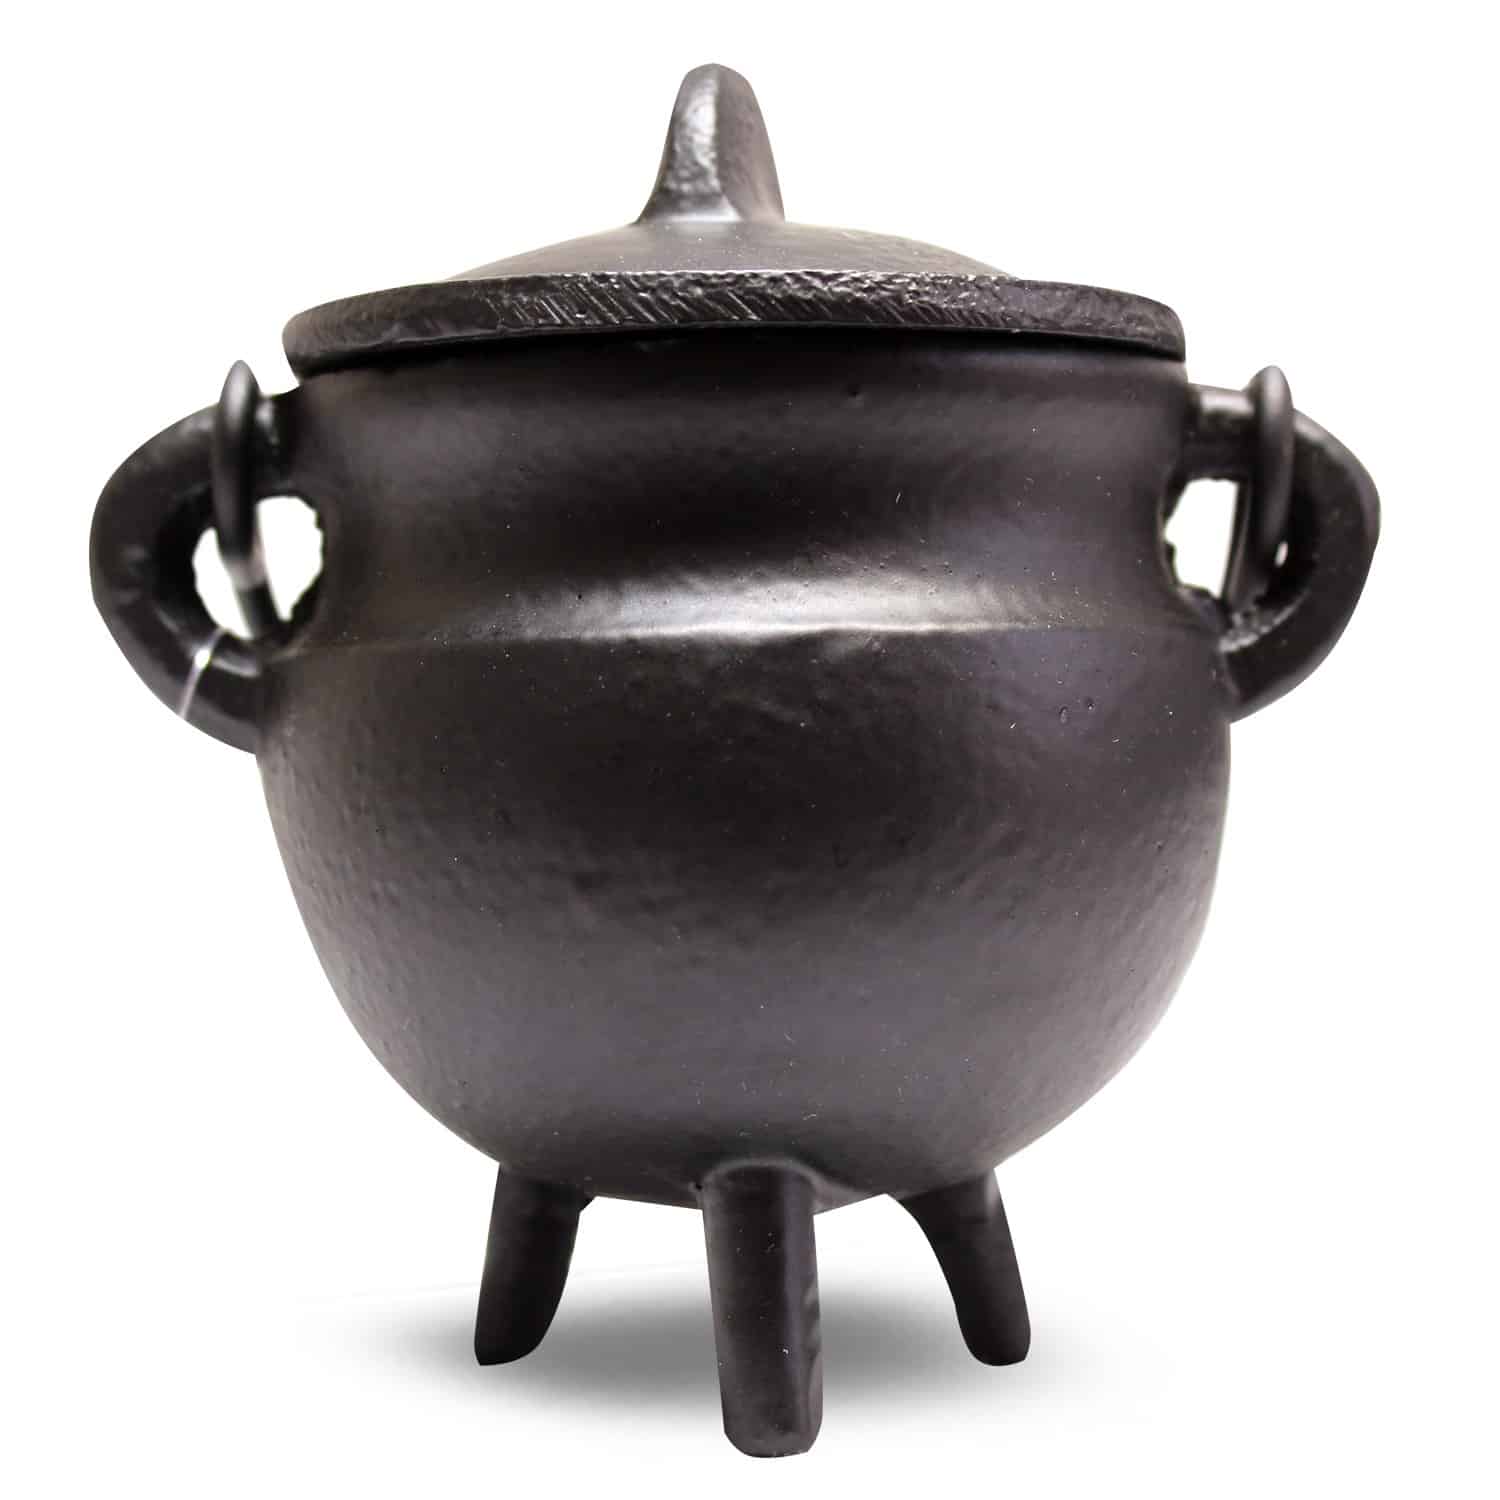 Cauldron (Heksenketeltje) Model 14